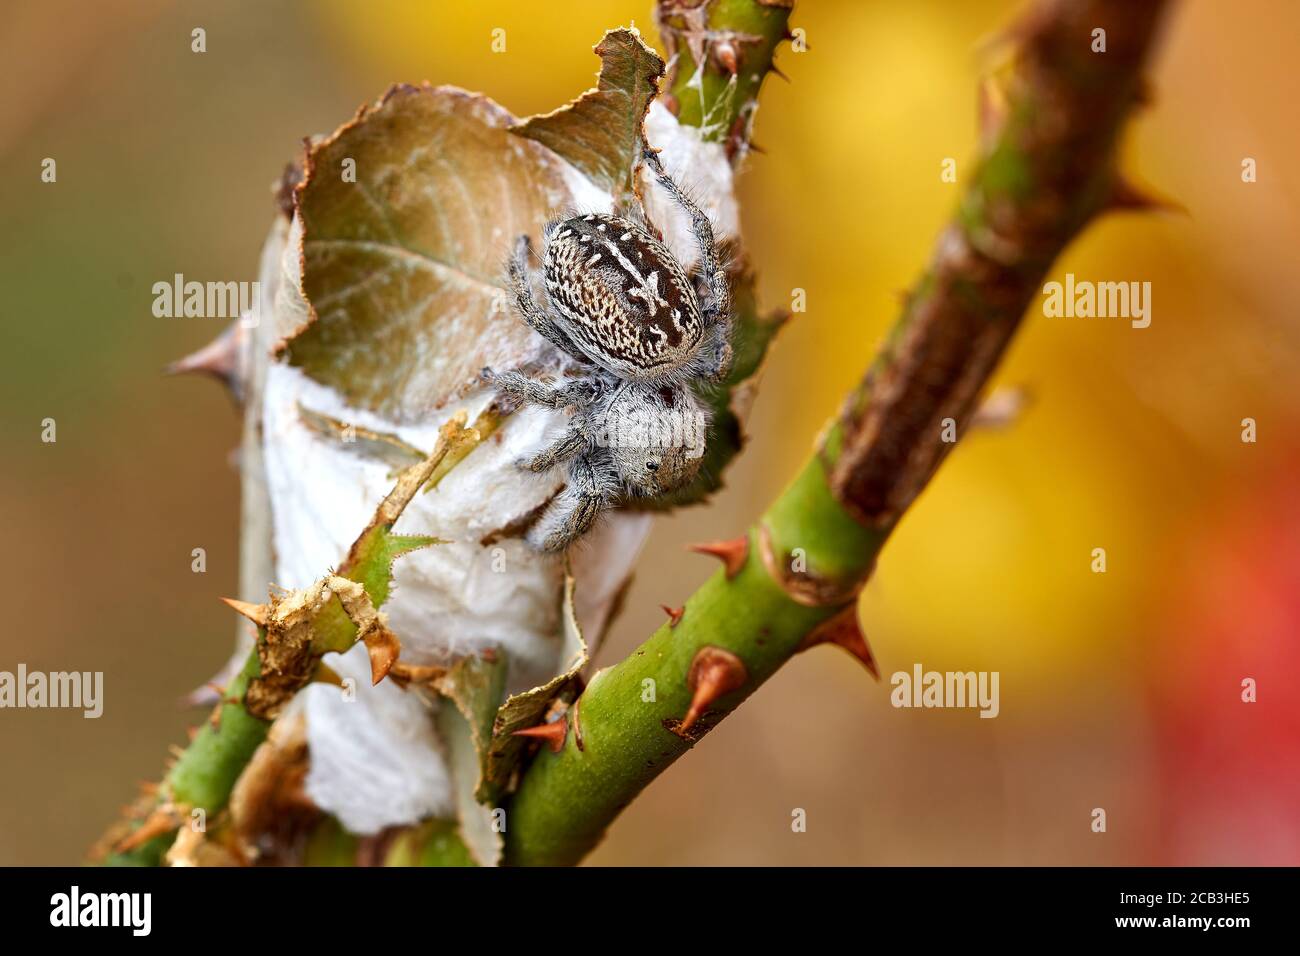 Gros plan d'une belle femelle en bonne santé Texas Jumping Spider (Phidippus texanus) Banque D'Images